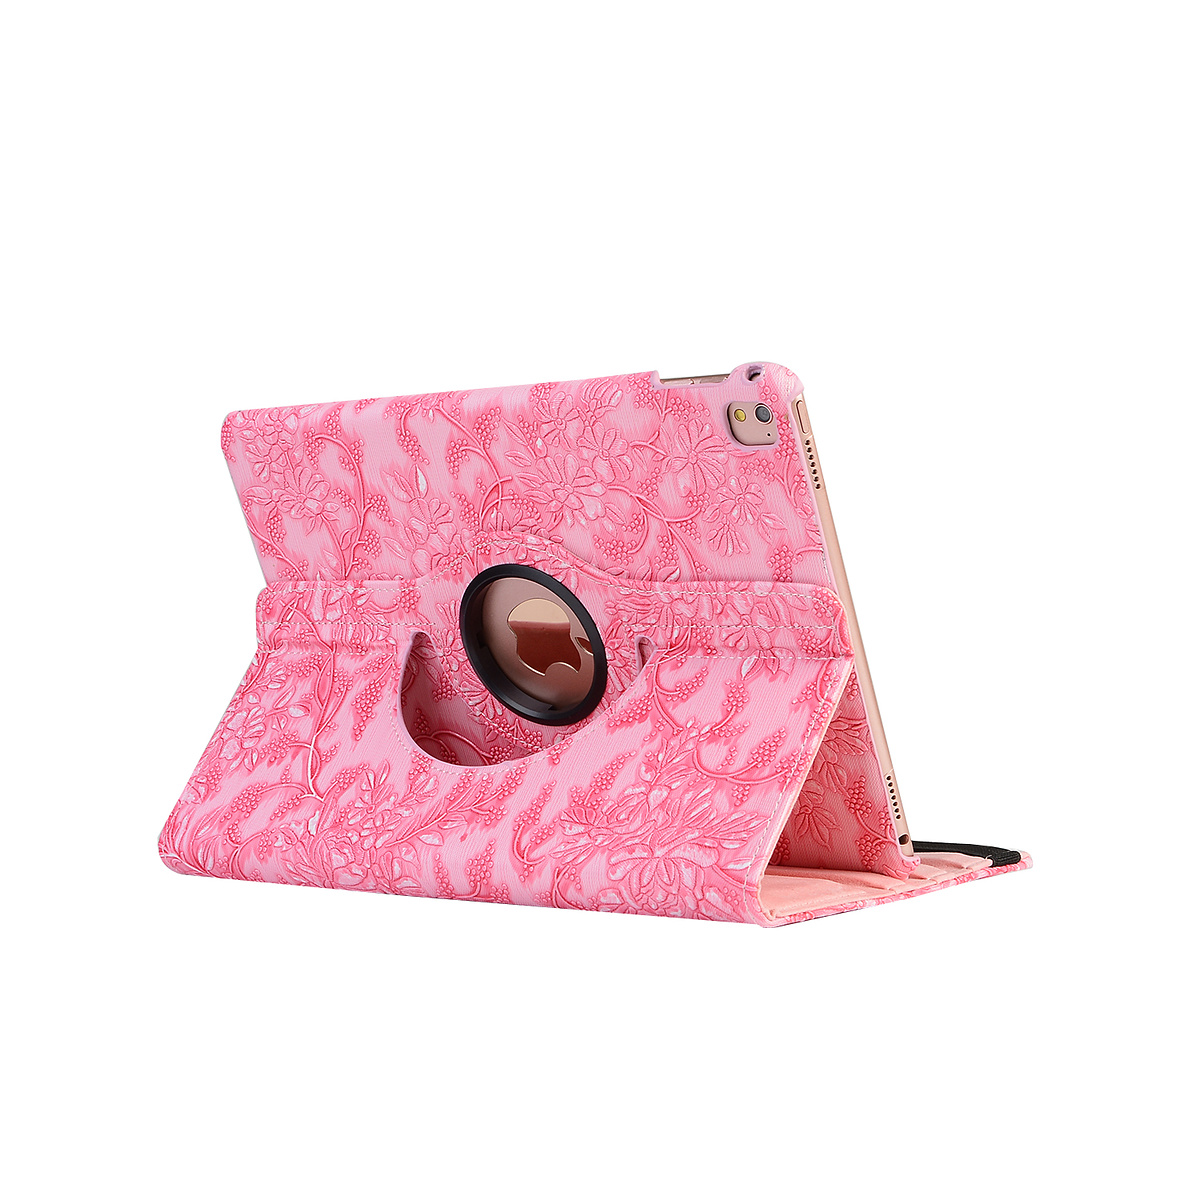 Läderfodral blommor rosa, iPad 2/3/4